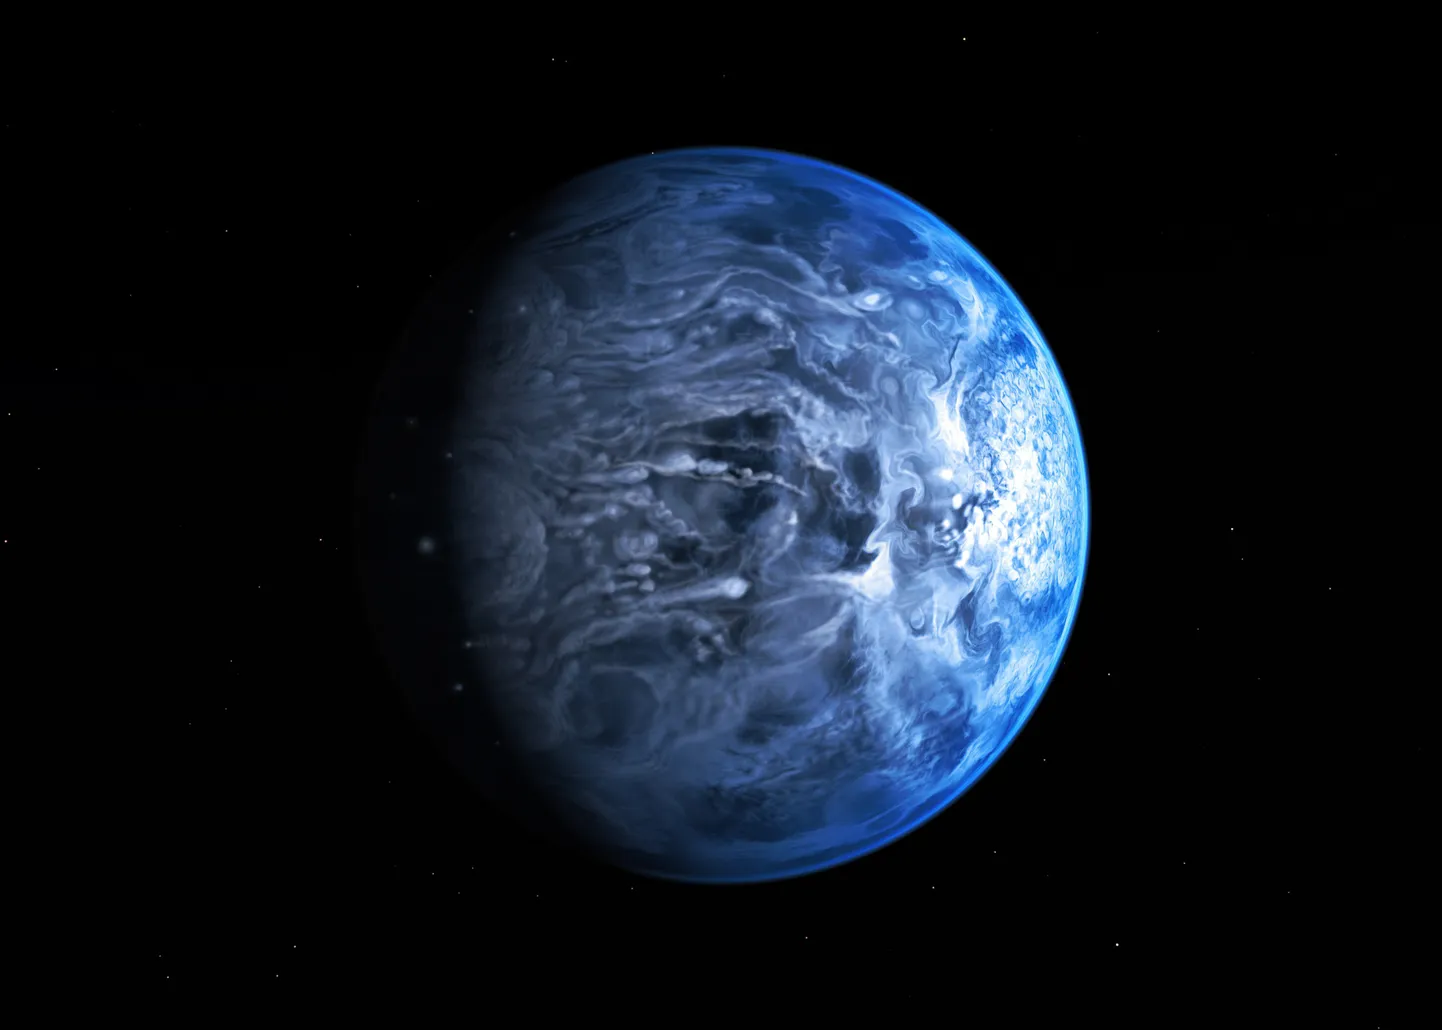 Kunstniku nägemus planeedist HD 189733b, kus sajab vedelat klaasi